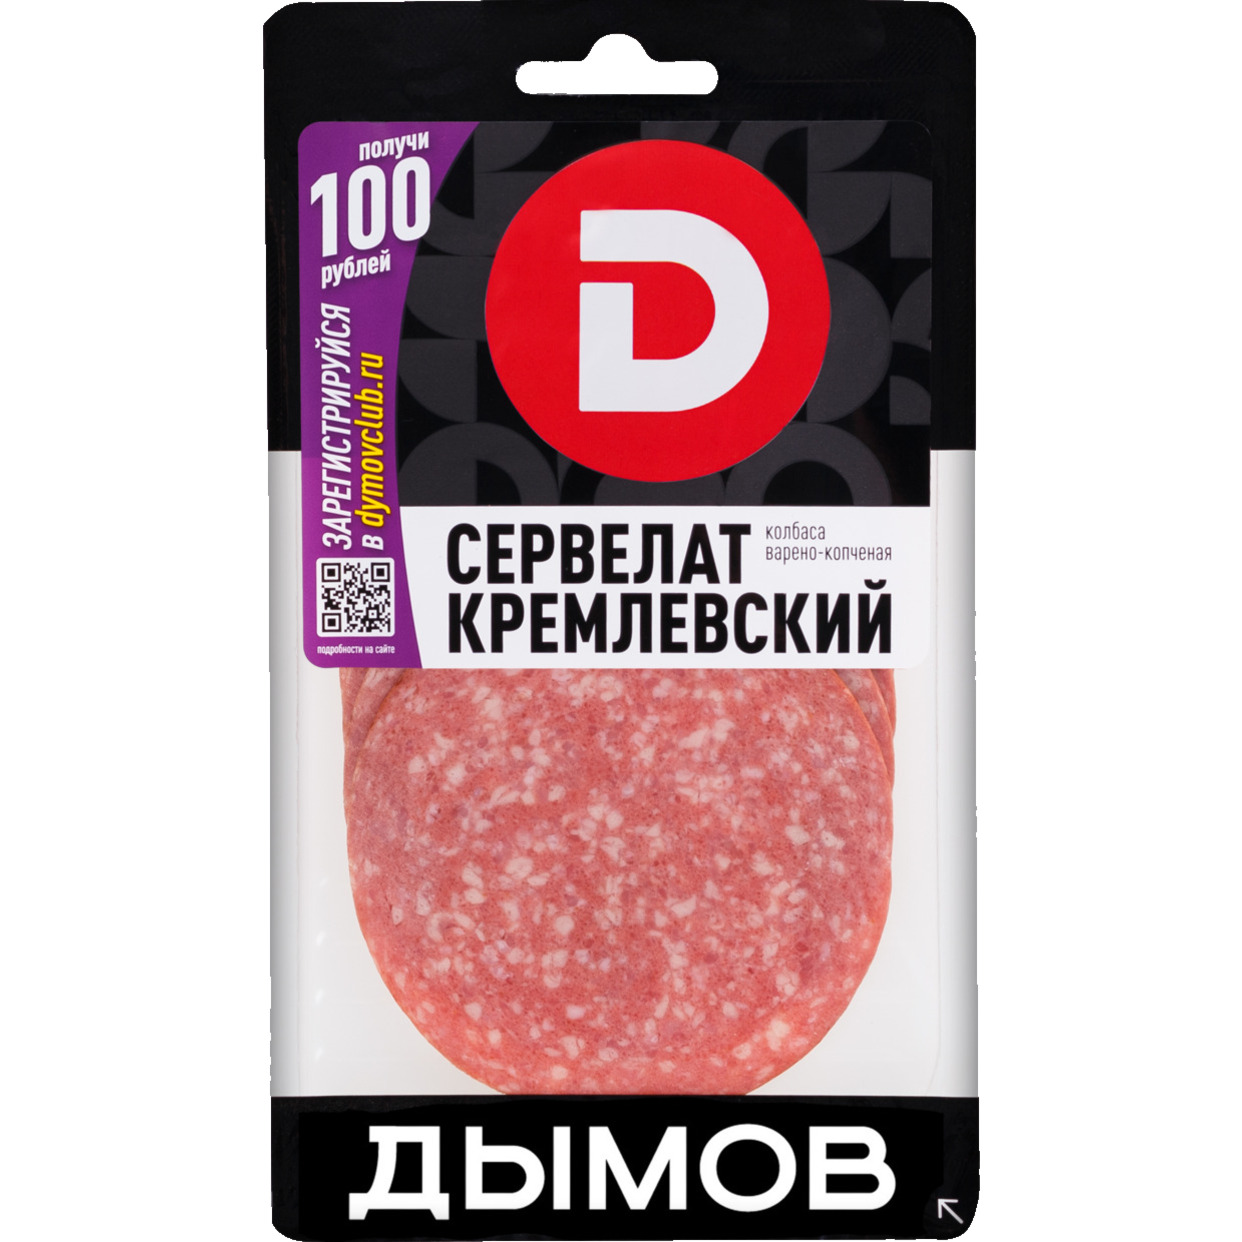 Мясной продукт. Изделие колбасное варено-копченое колбаса Сервелат "Кремлевский" нарезка 200г